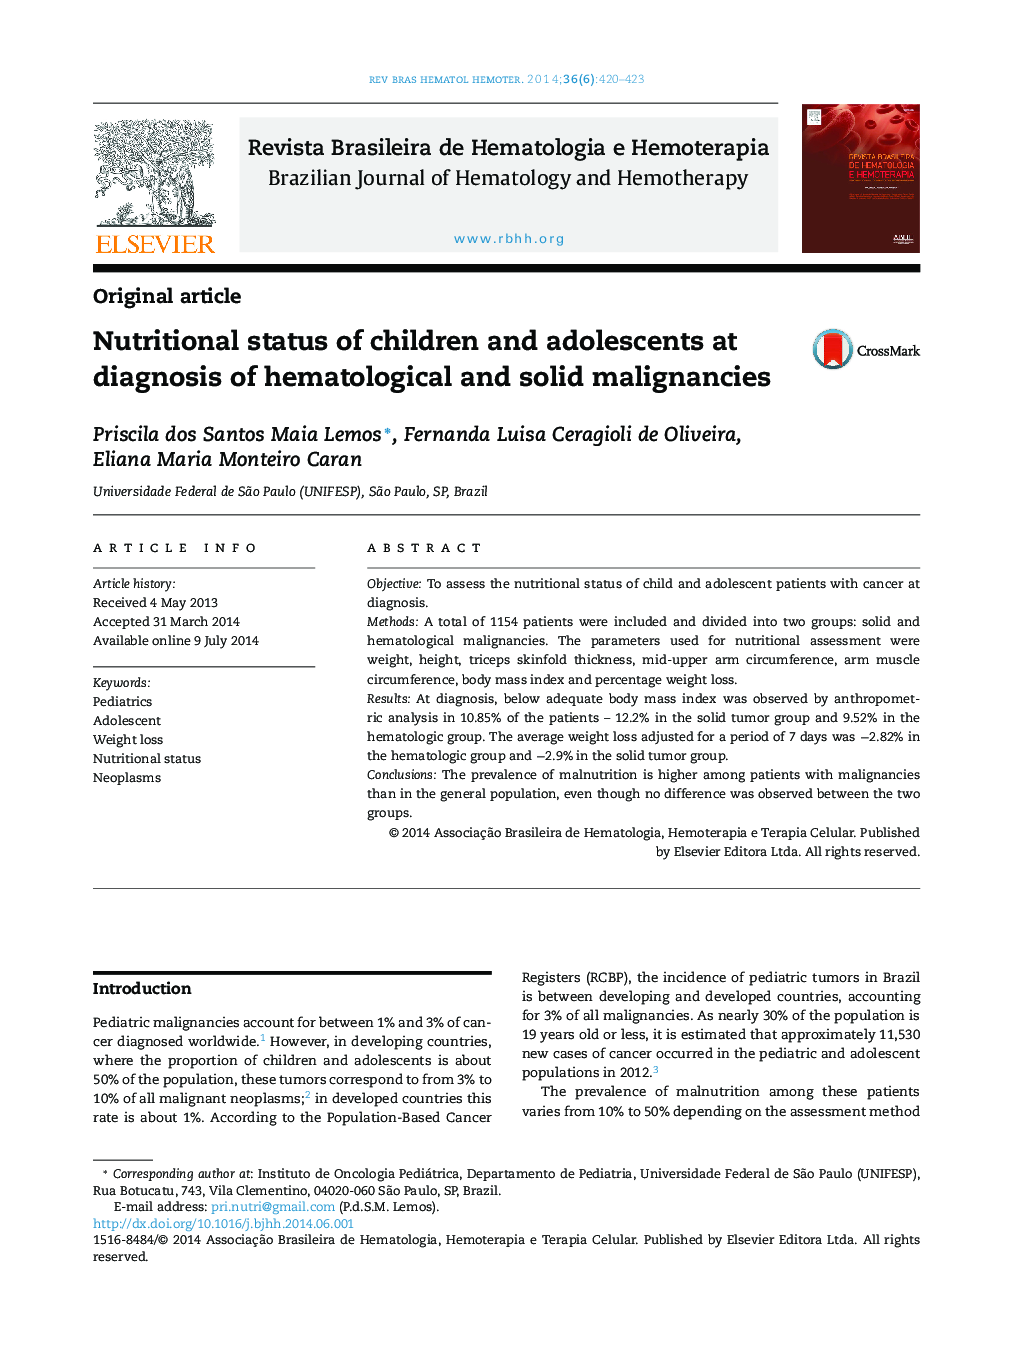 وضعیت تغذیه کودکان و نوجوانان در تشخیص بدخیمیهای هماتولوژیک و جامد 